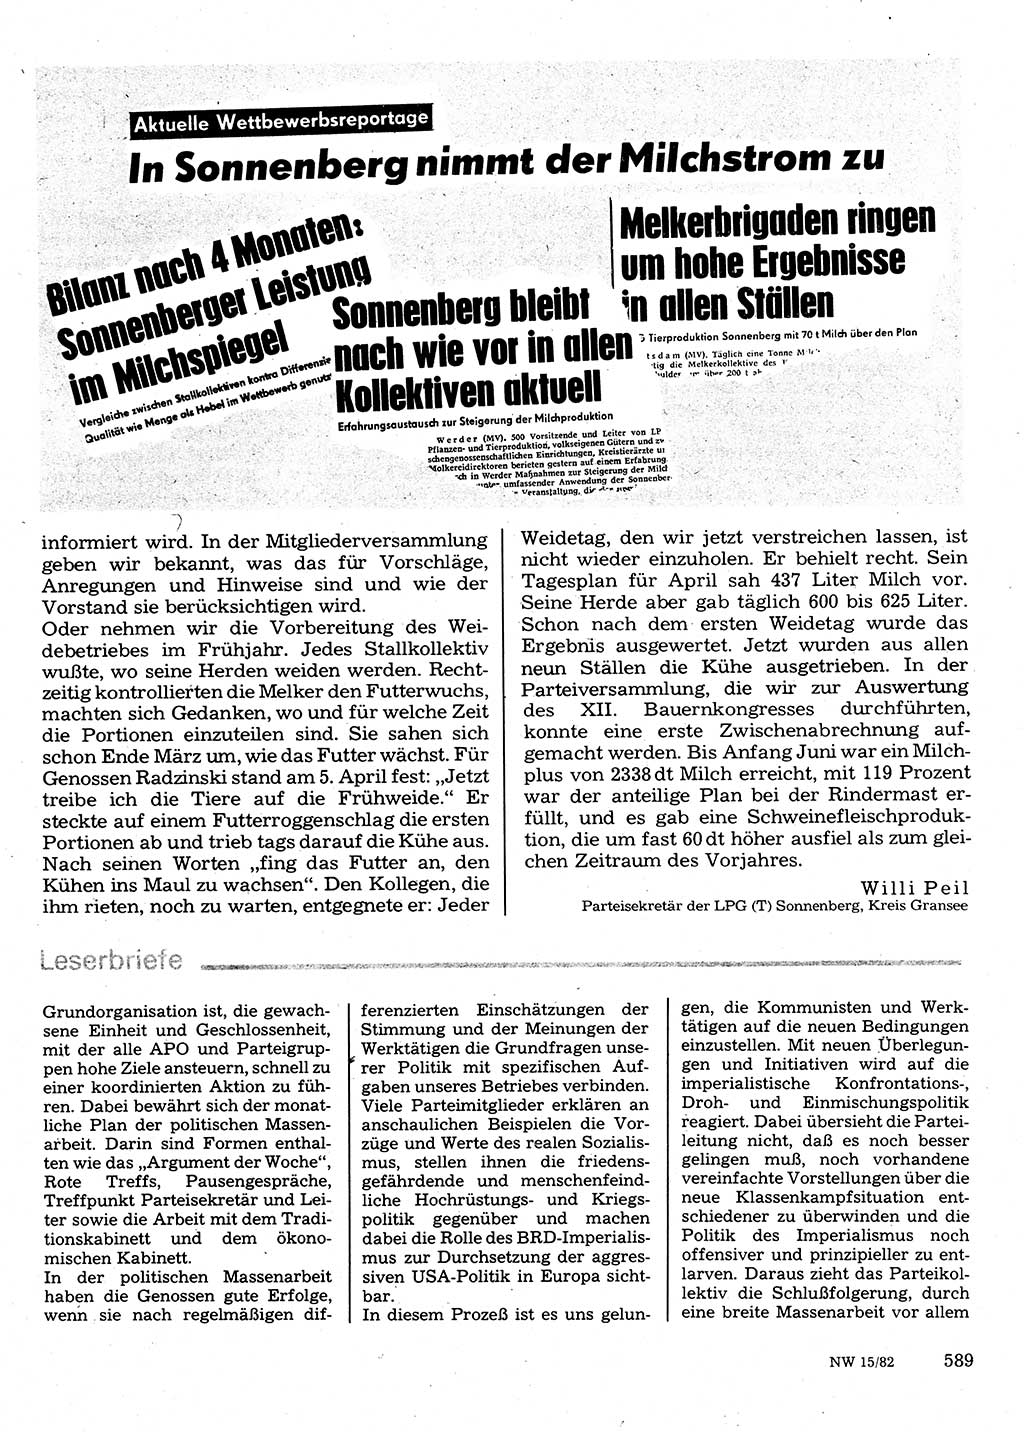 Neuer Weg (NW), Organ des Zentralkomitees (ZK) der SED (Sozialistische Einheitspartei Deutschlands) für Fragen des Parteilebens, 37. Jahrgang [Deutsche Demokratische Republik (DDR)] 1982, Seite 589 (NW ZK SED DDR 1982, S. 589)